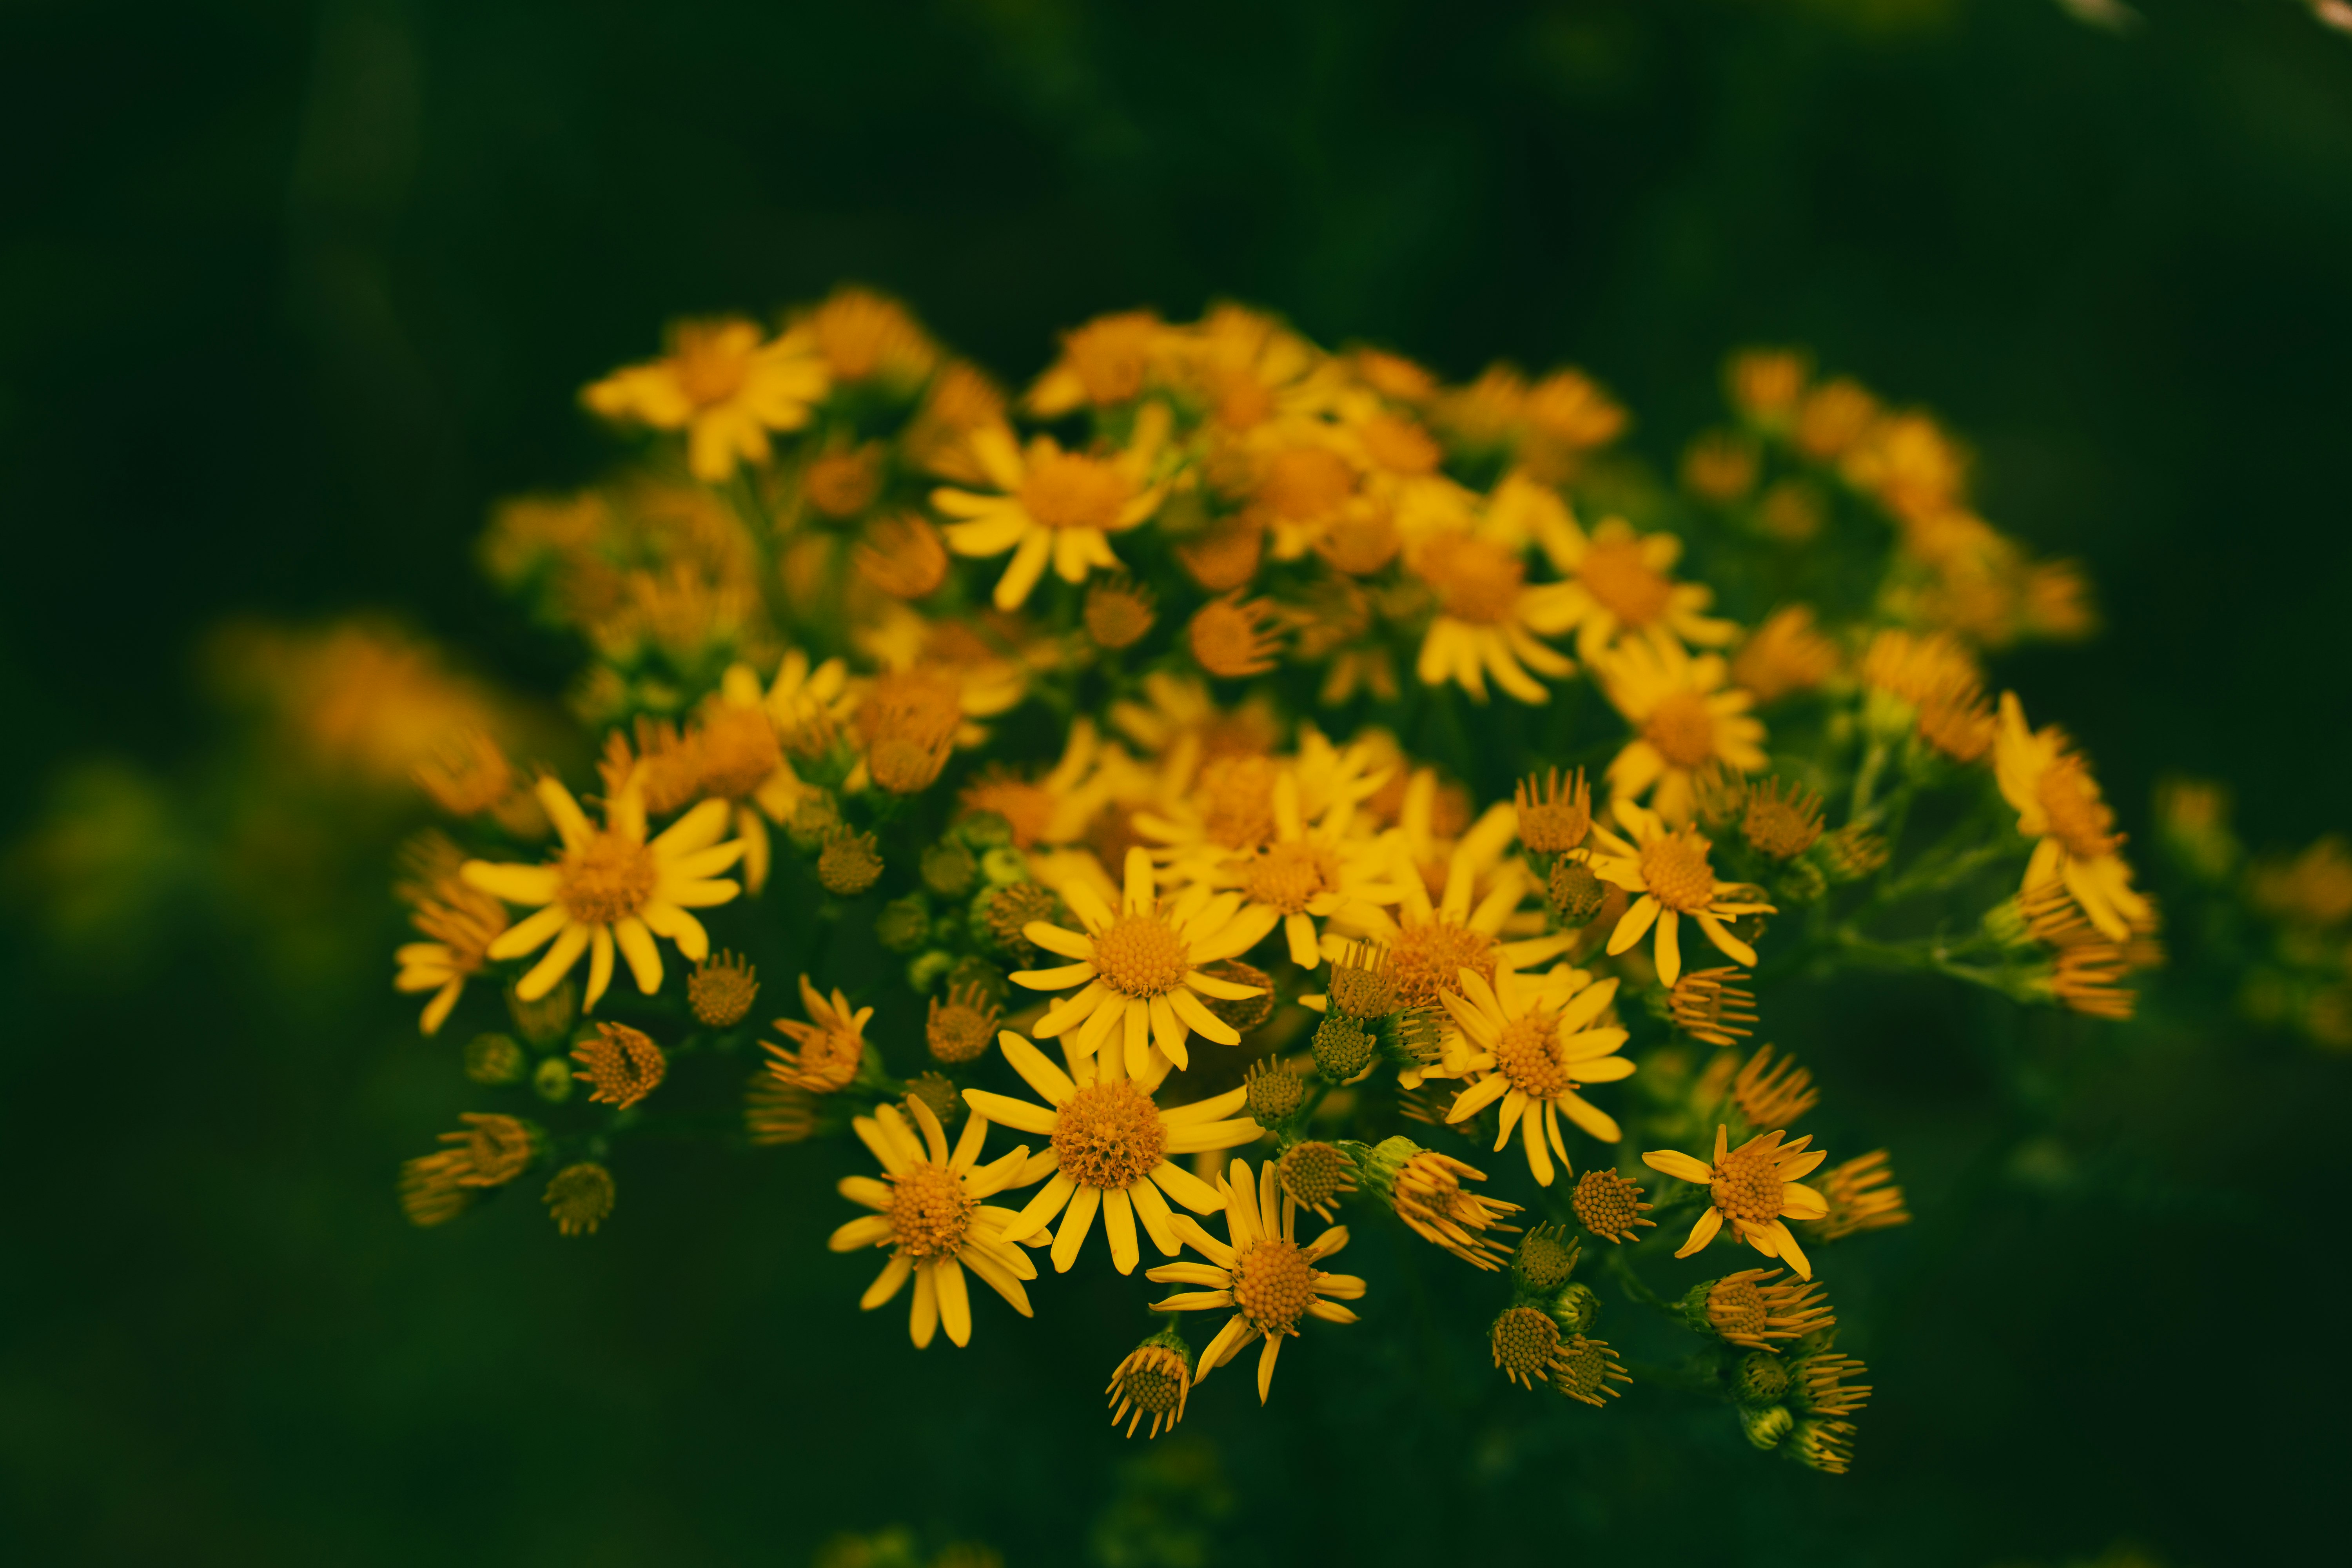 yellow flowers in tilt shift lens